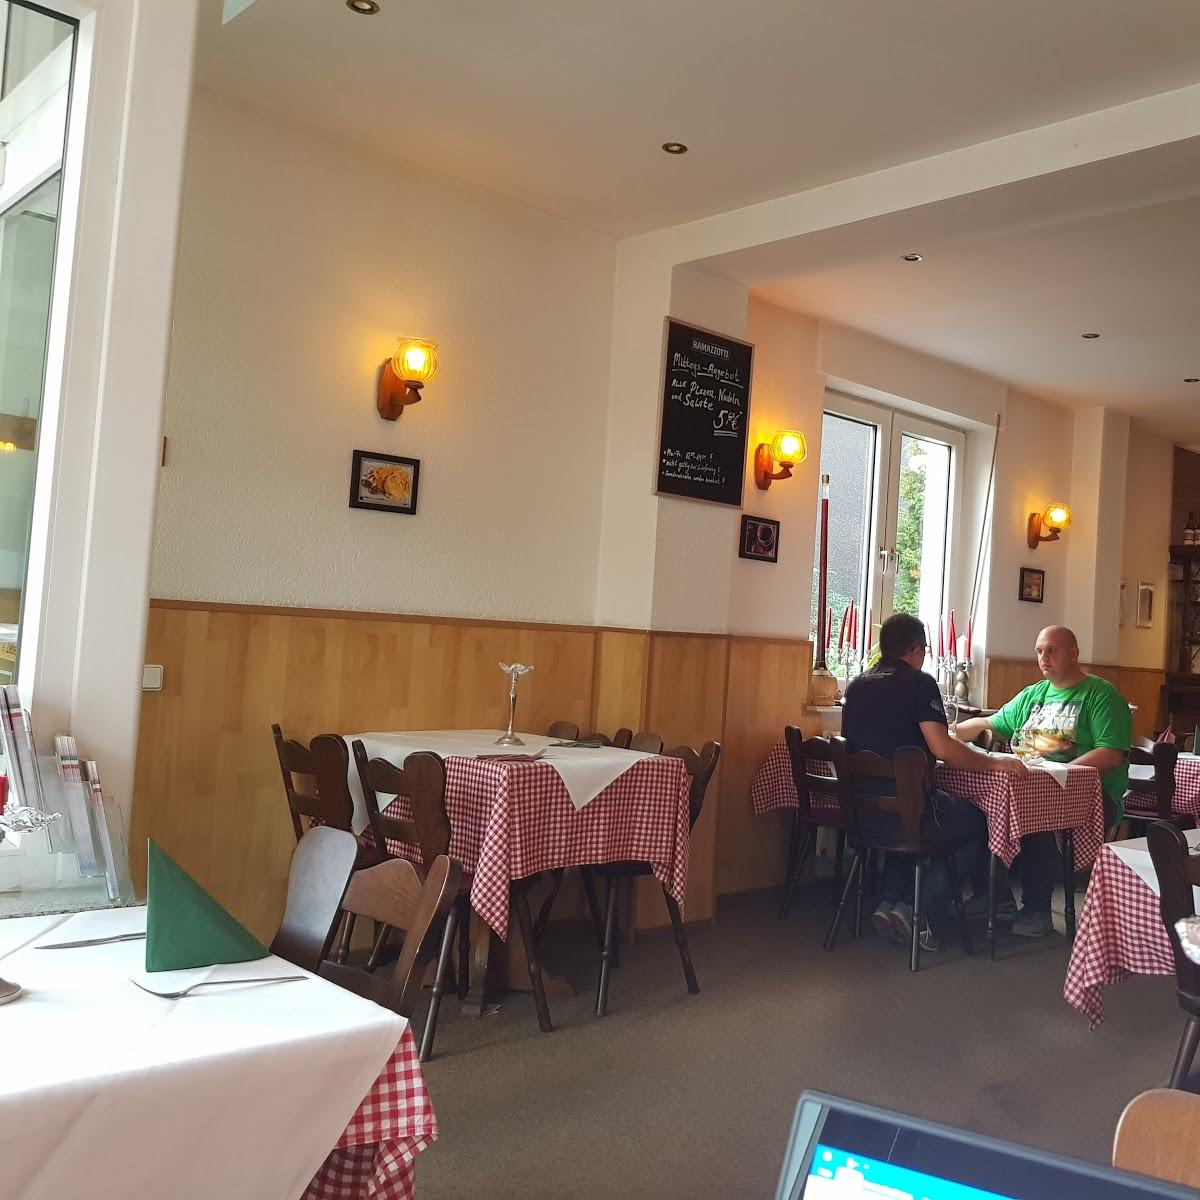 Restaurant "Restaurant Holzofen Spezialitäten" in  Hamm